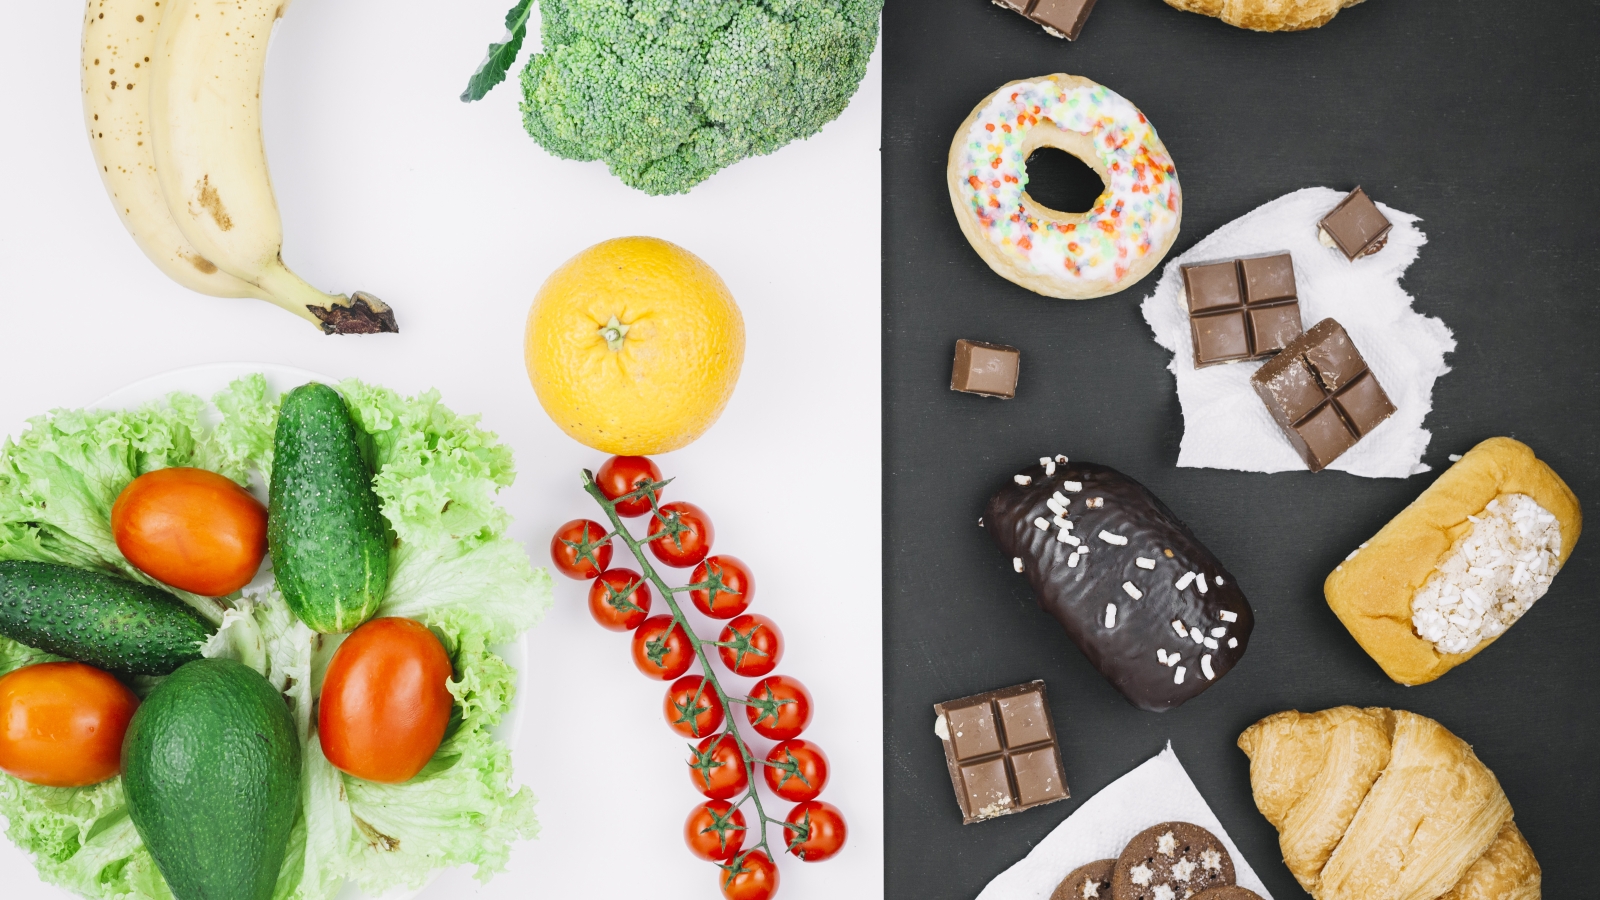 healthy-food-vs-unhealthy-food